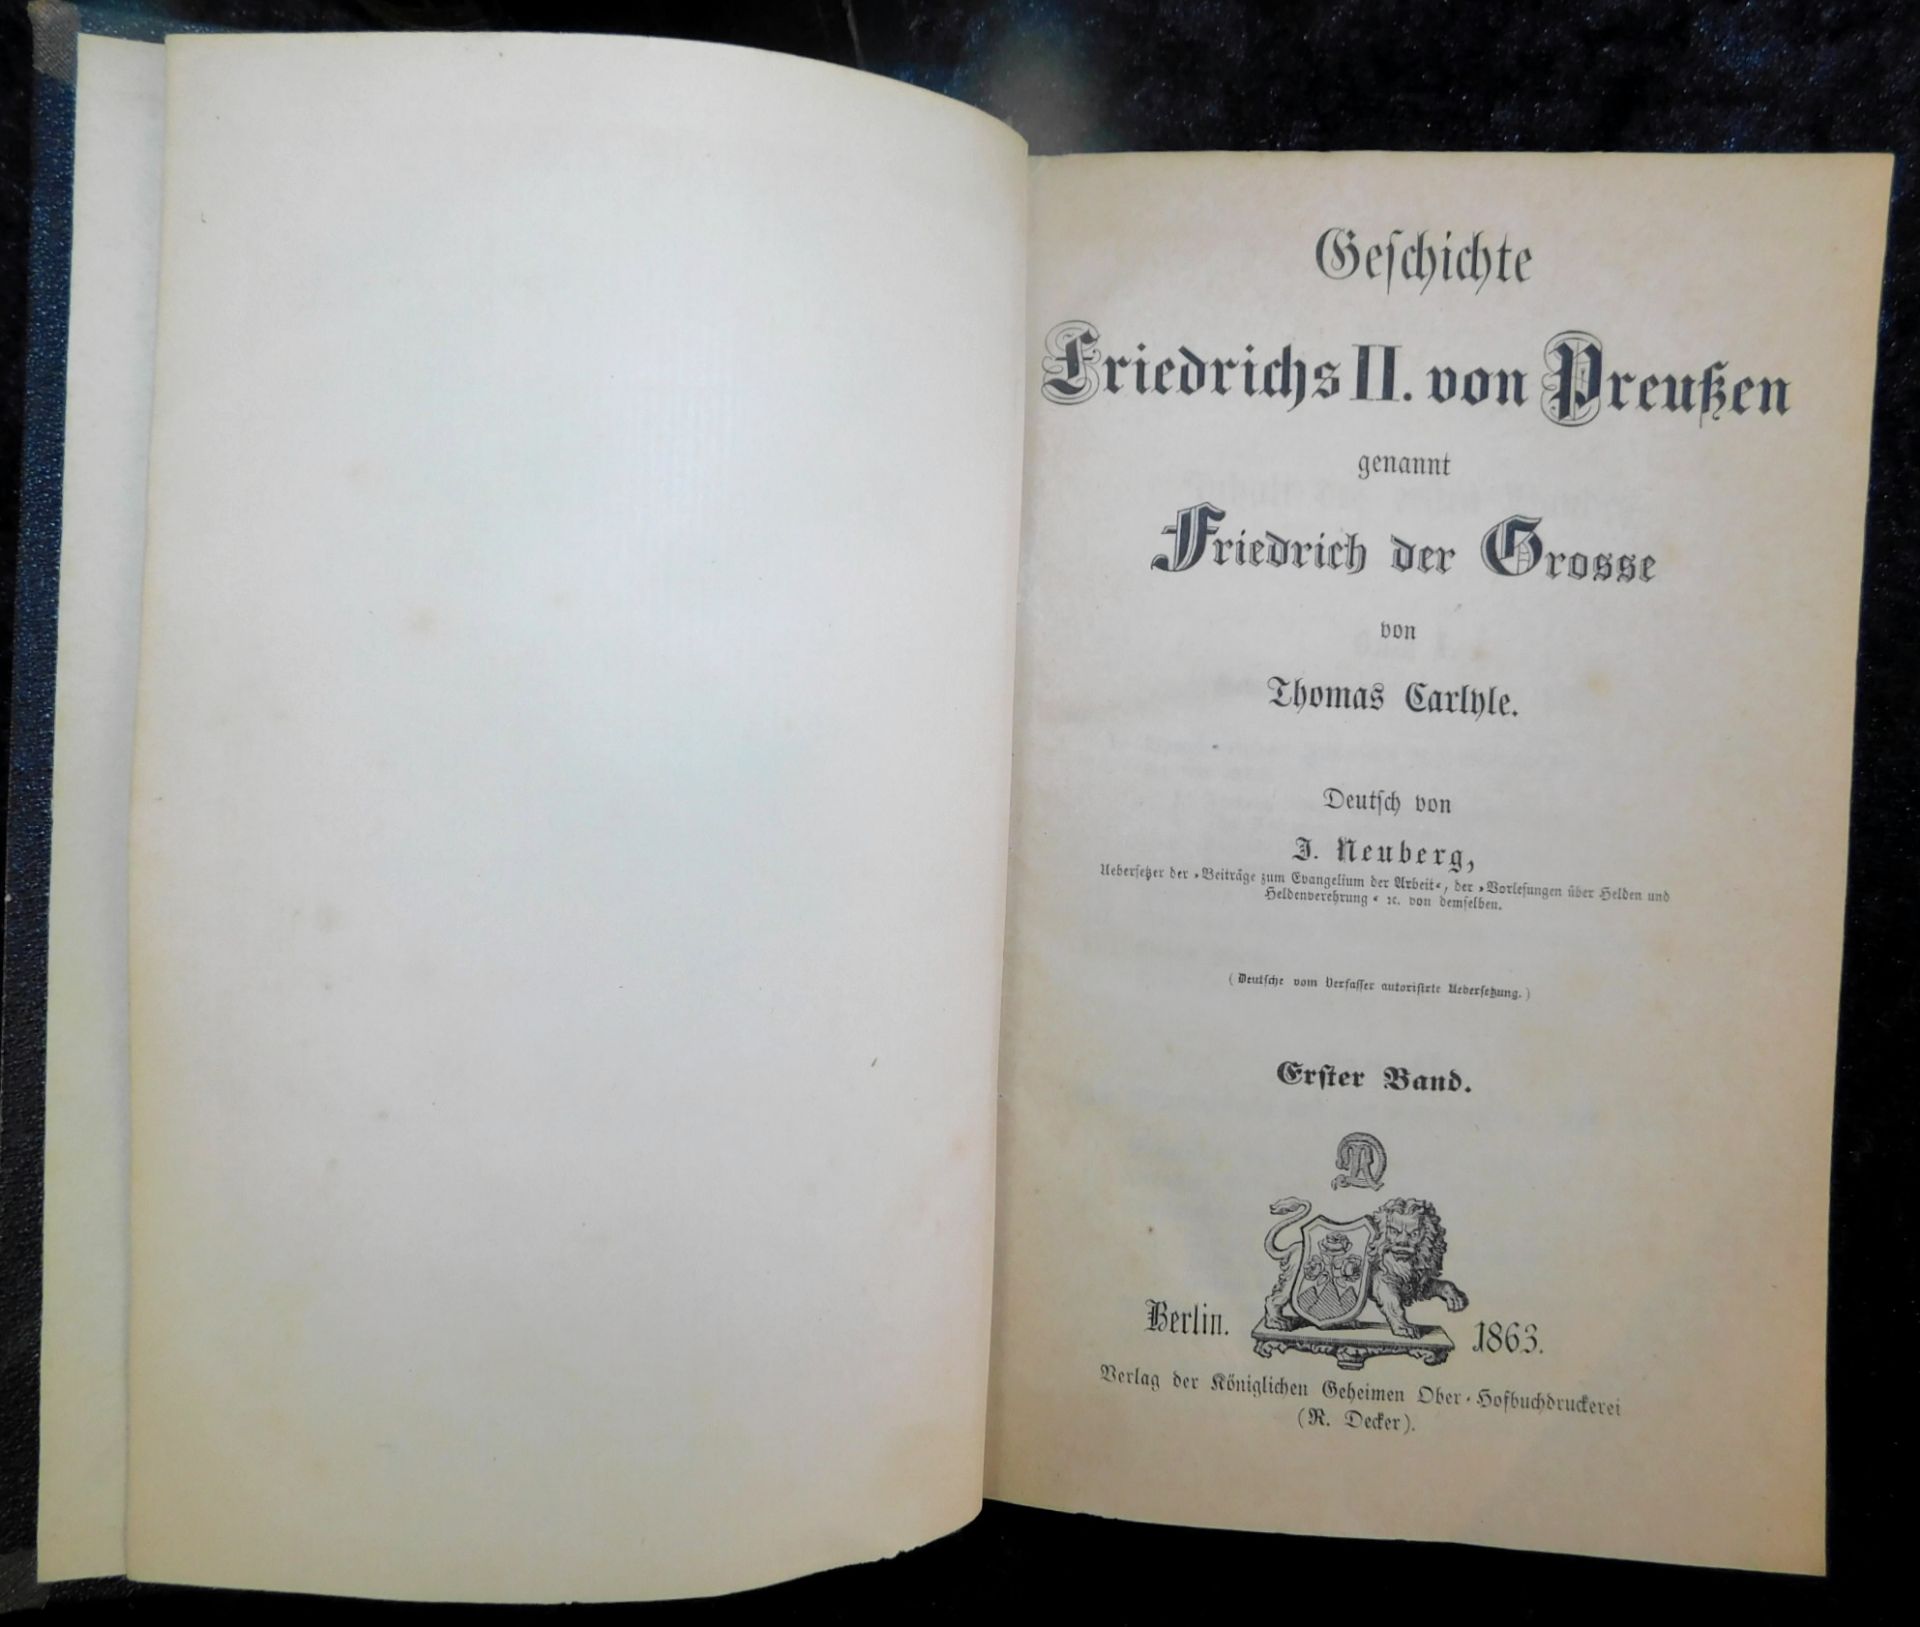 Friedrich der Große, 5 Bände, Thomas Carlyle, Verlag R. Decker, Berlin 1863 - Image 2 of 6